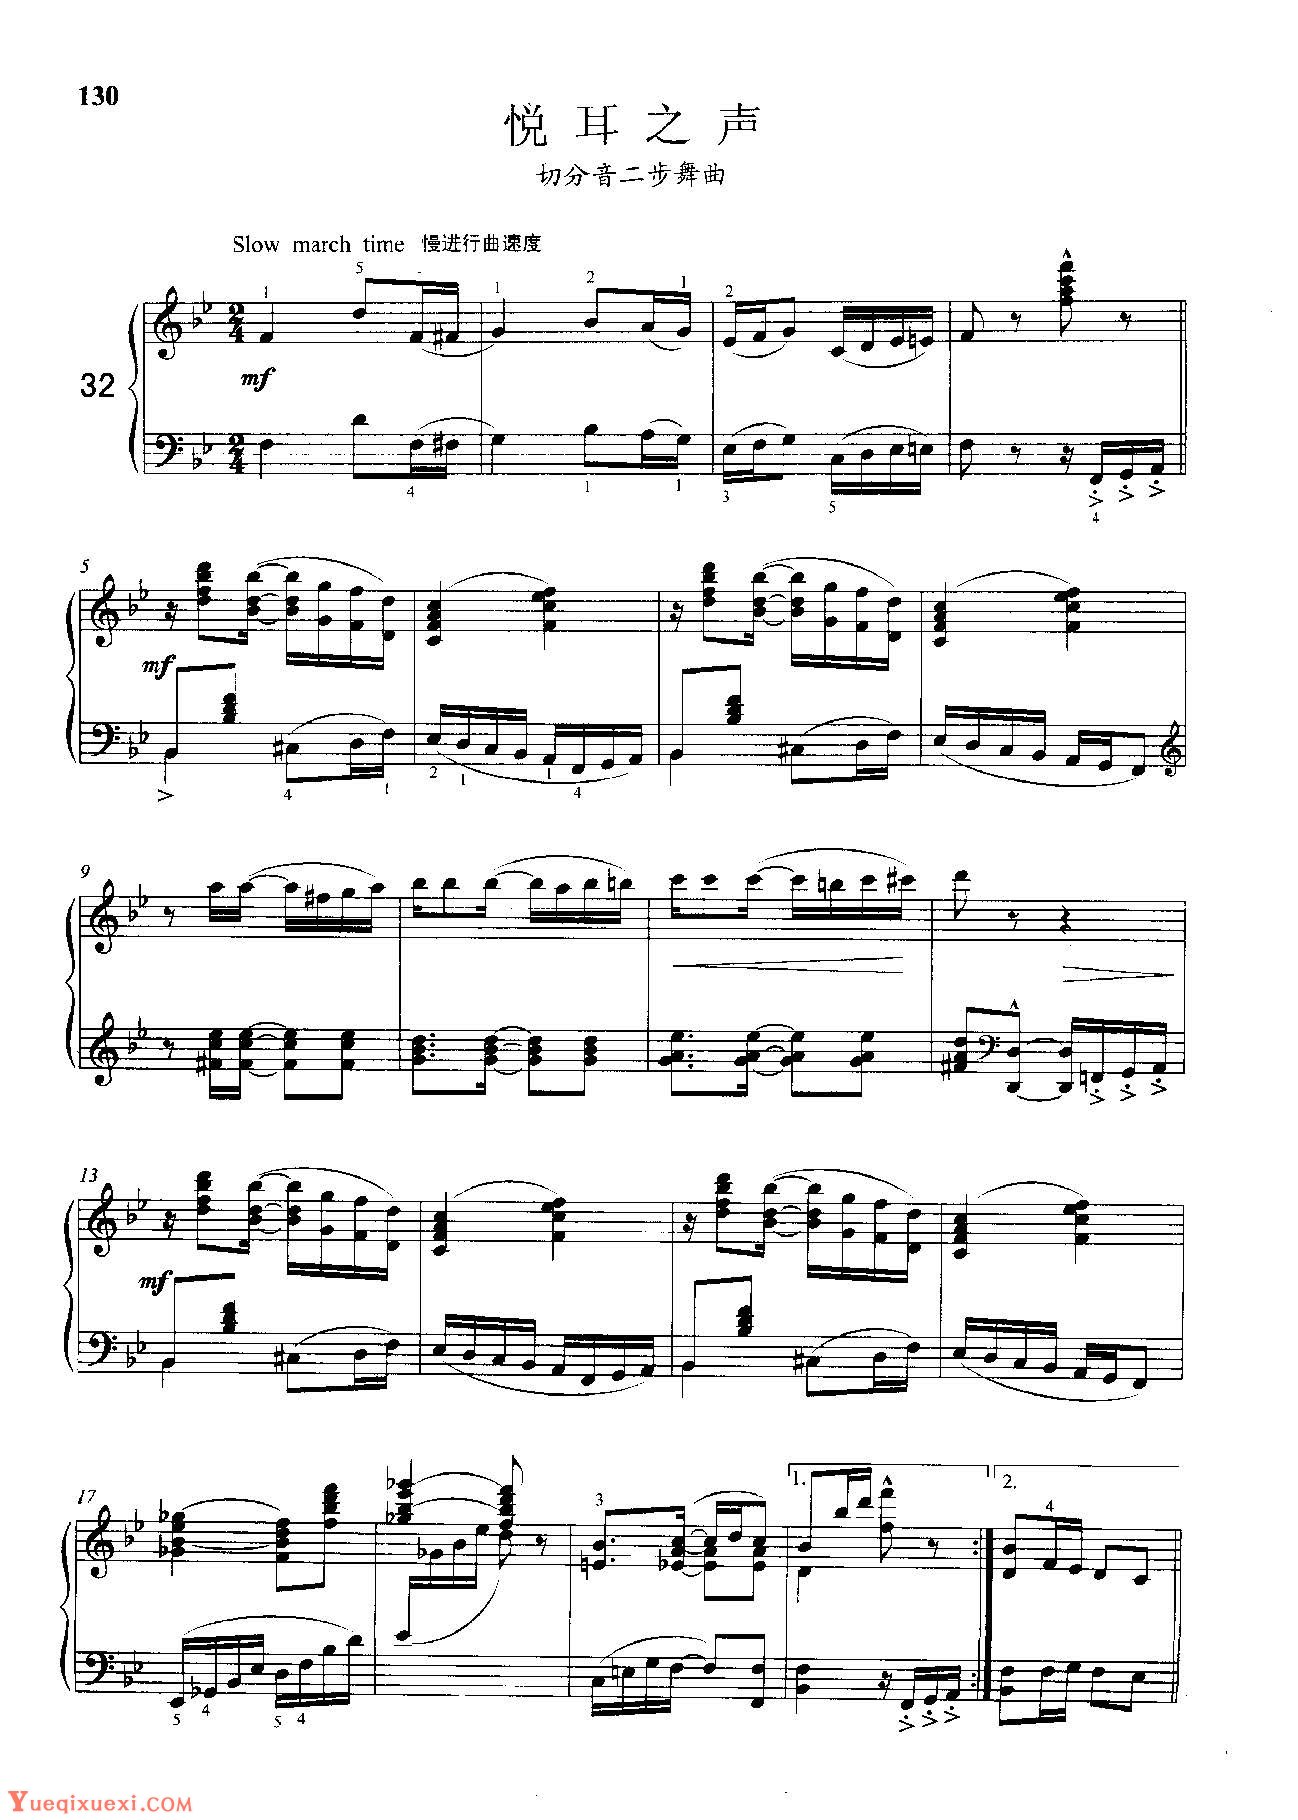 雷格泰姆钢琴乐谱《悦耳之声》雷格泰姆之王斯科特·乔普林